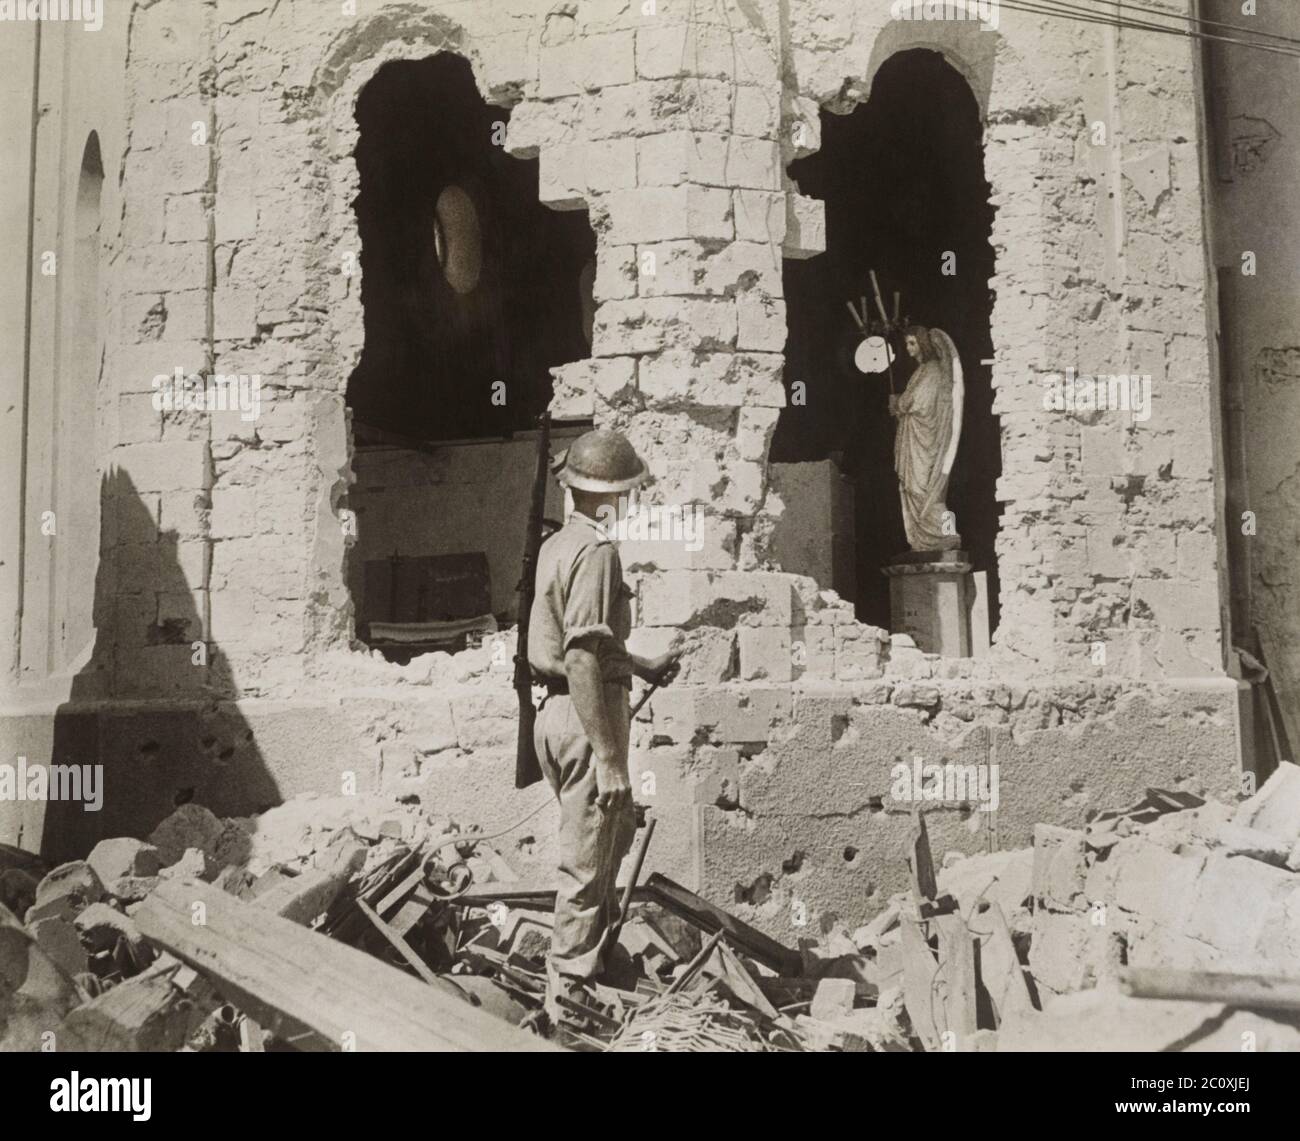 Soldat britannique debout dans des décombres, regardant à travers des trous béants dans l'église catholique endommagée, Tobruk, Libye, décembre 1941 Banque D'Images